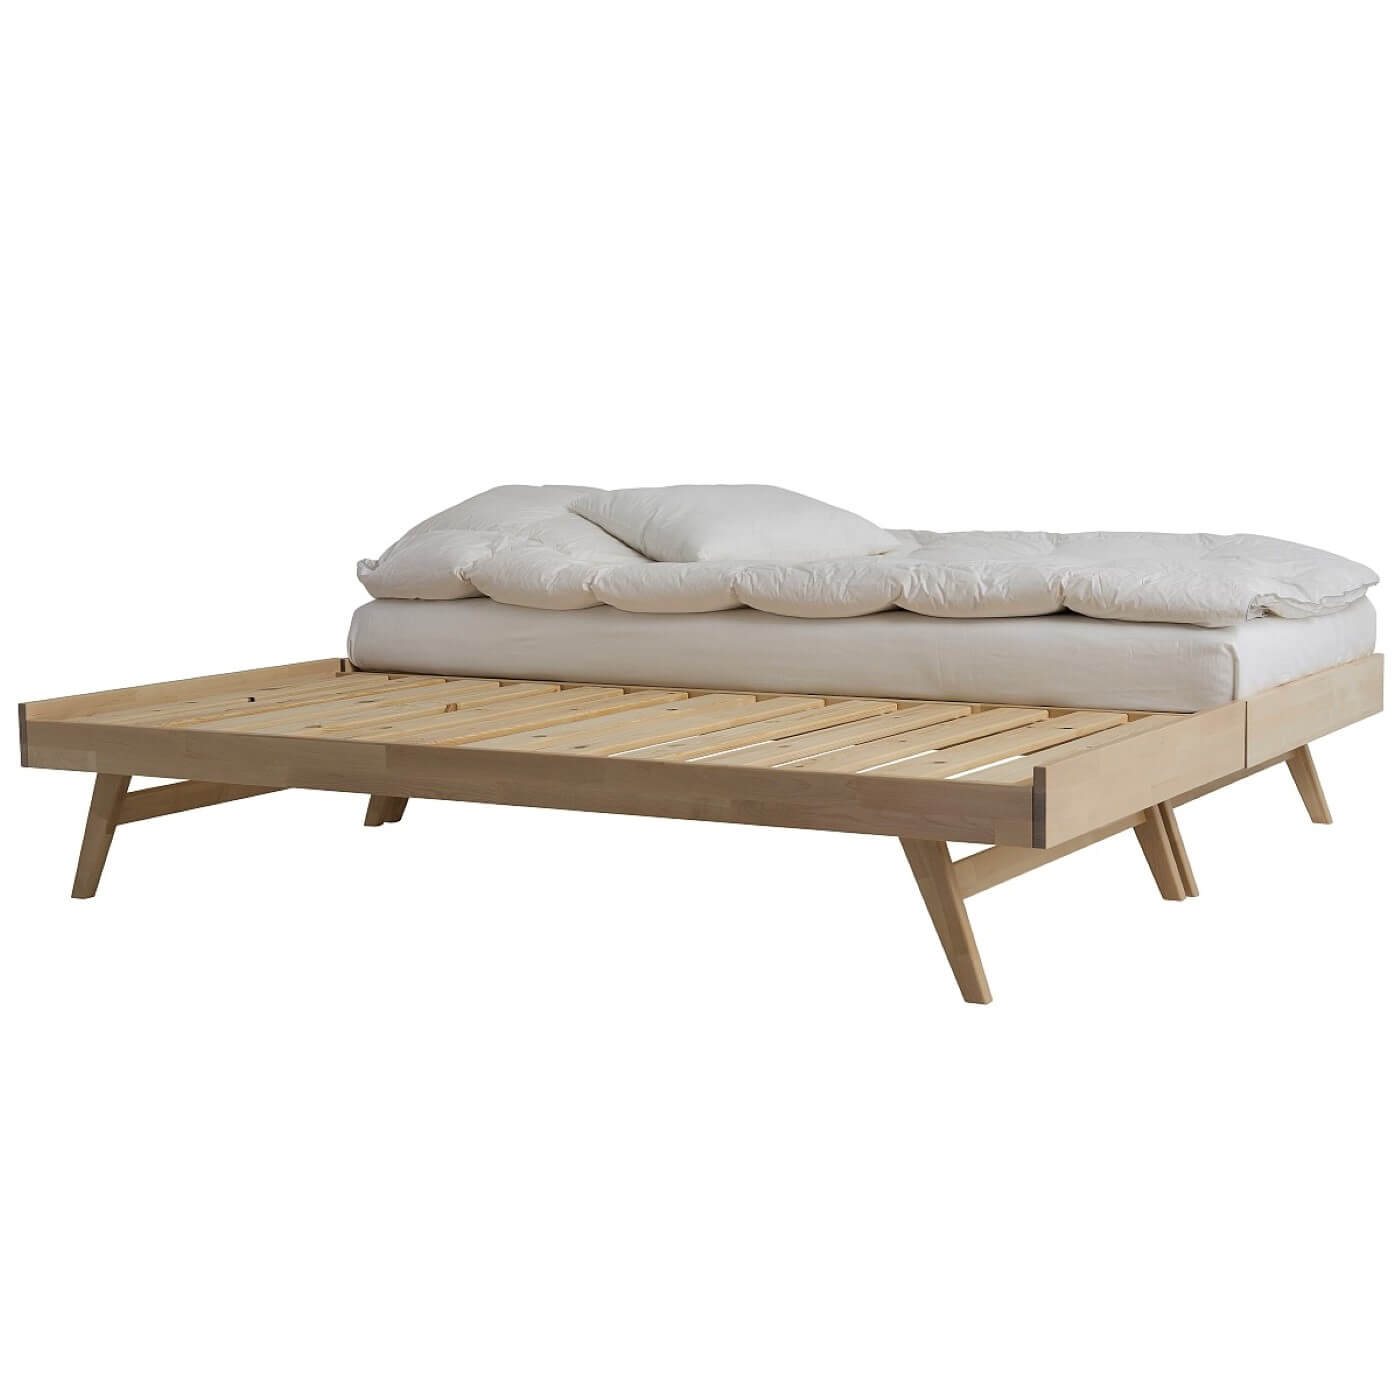 Łóżko na nóżkach NOTTE. Dwa łóżka drewniane na wysokich nóżkach złączone, stojące obok siebie. Jedno łóżko z materacem i białą pościelą drugie bez materaca z widocznym drewnianym stelażem